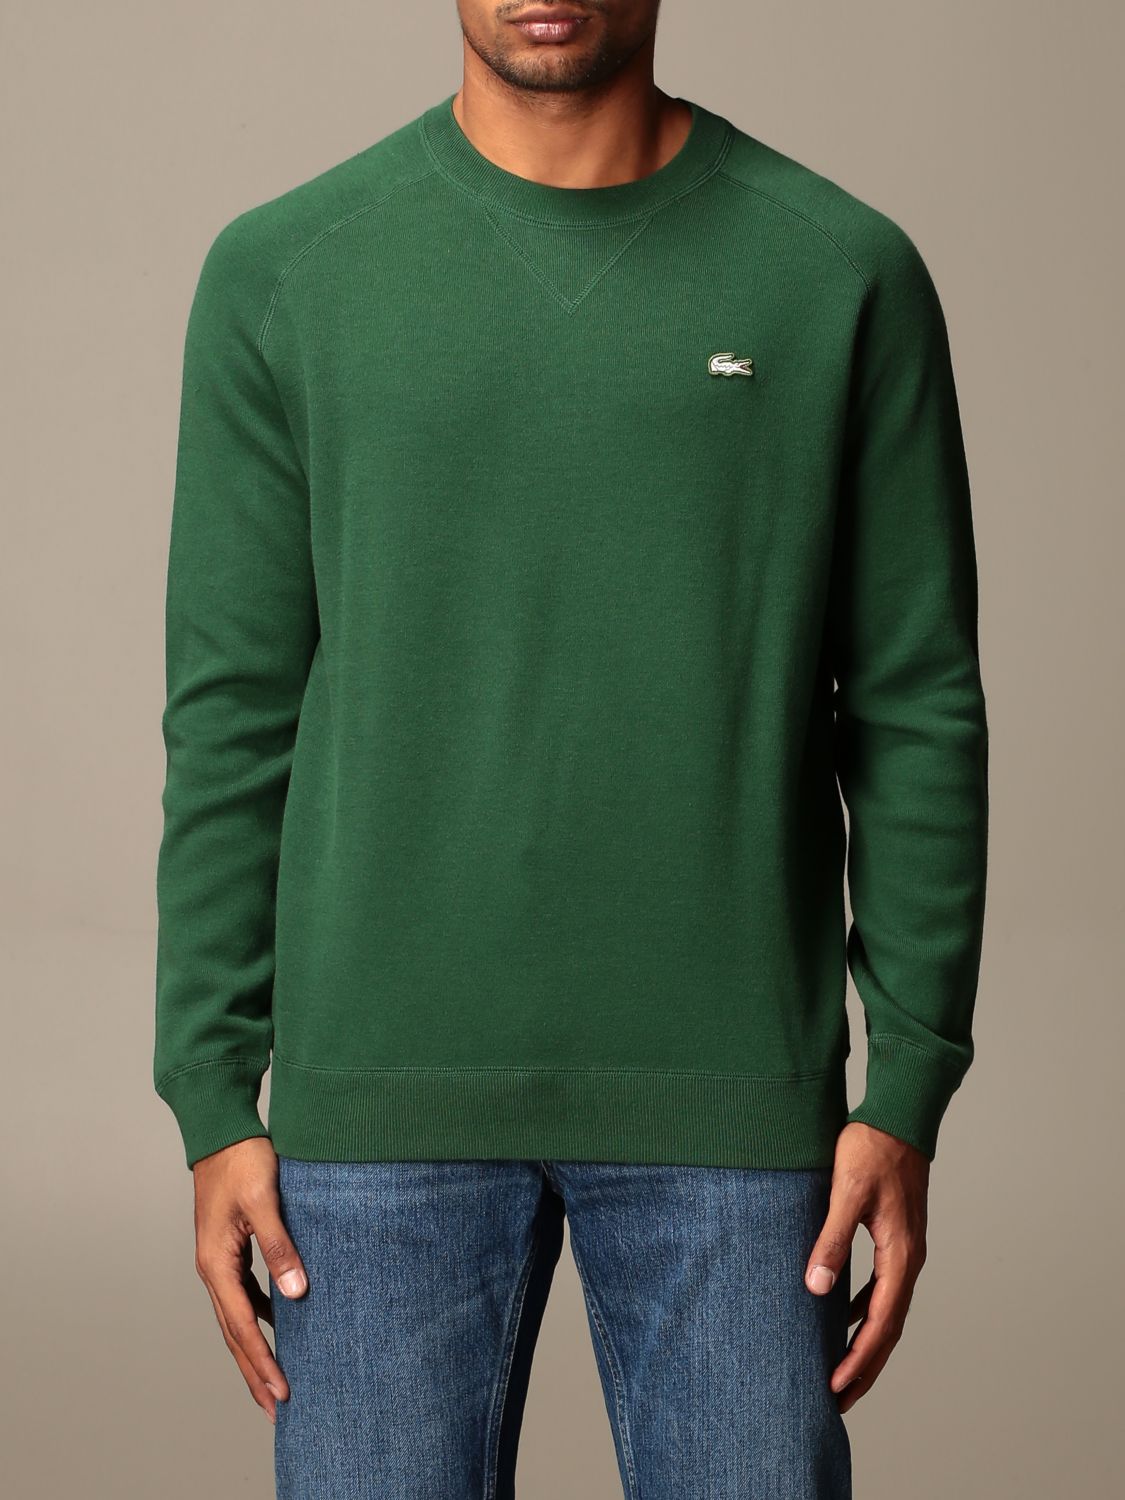 lacoste green sweatshirt